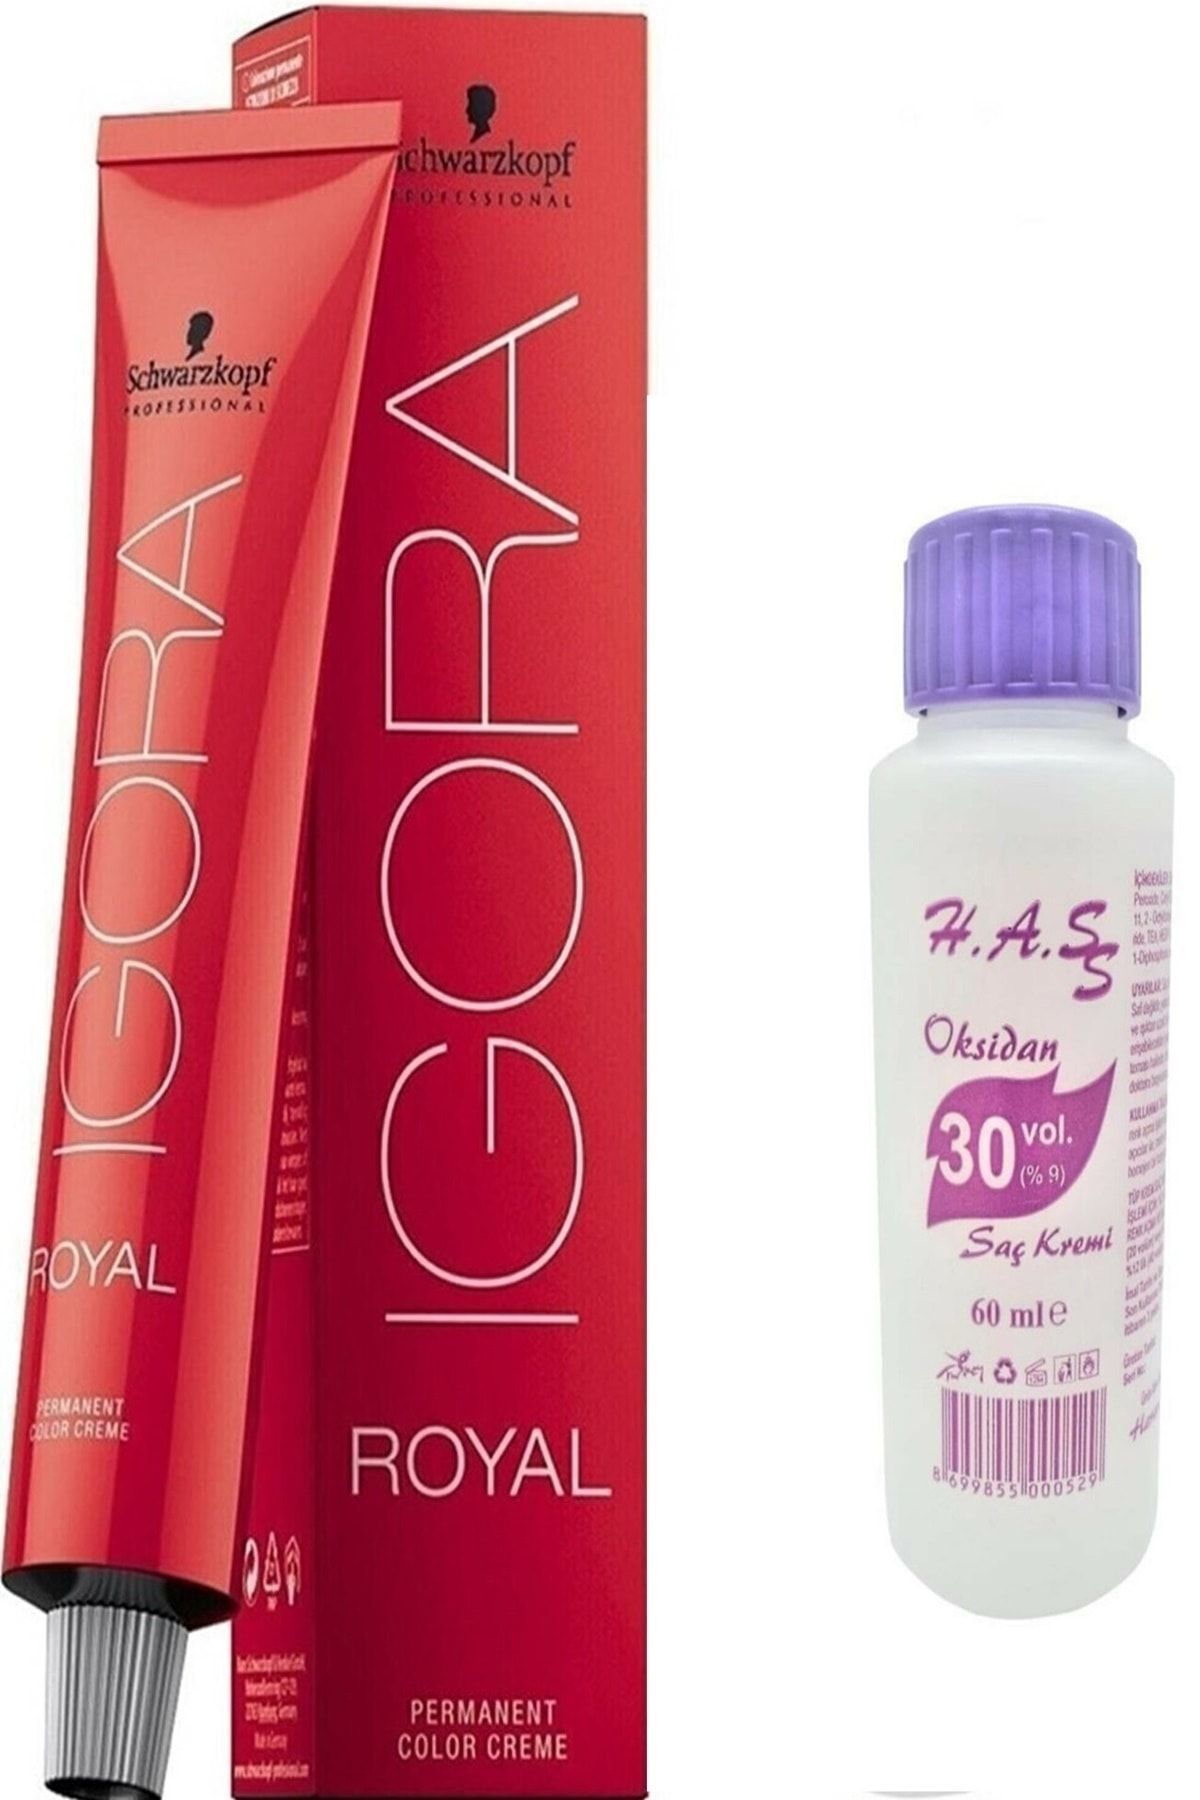 Igora Igora Royal Saç Boyası 0-88 Sarı Kızıl Yoğunlaştırıcı 60 Ml + Mini Oksidan 30 Volüm